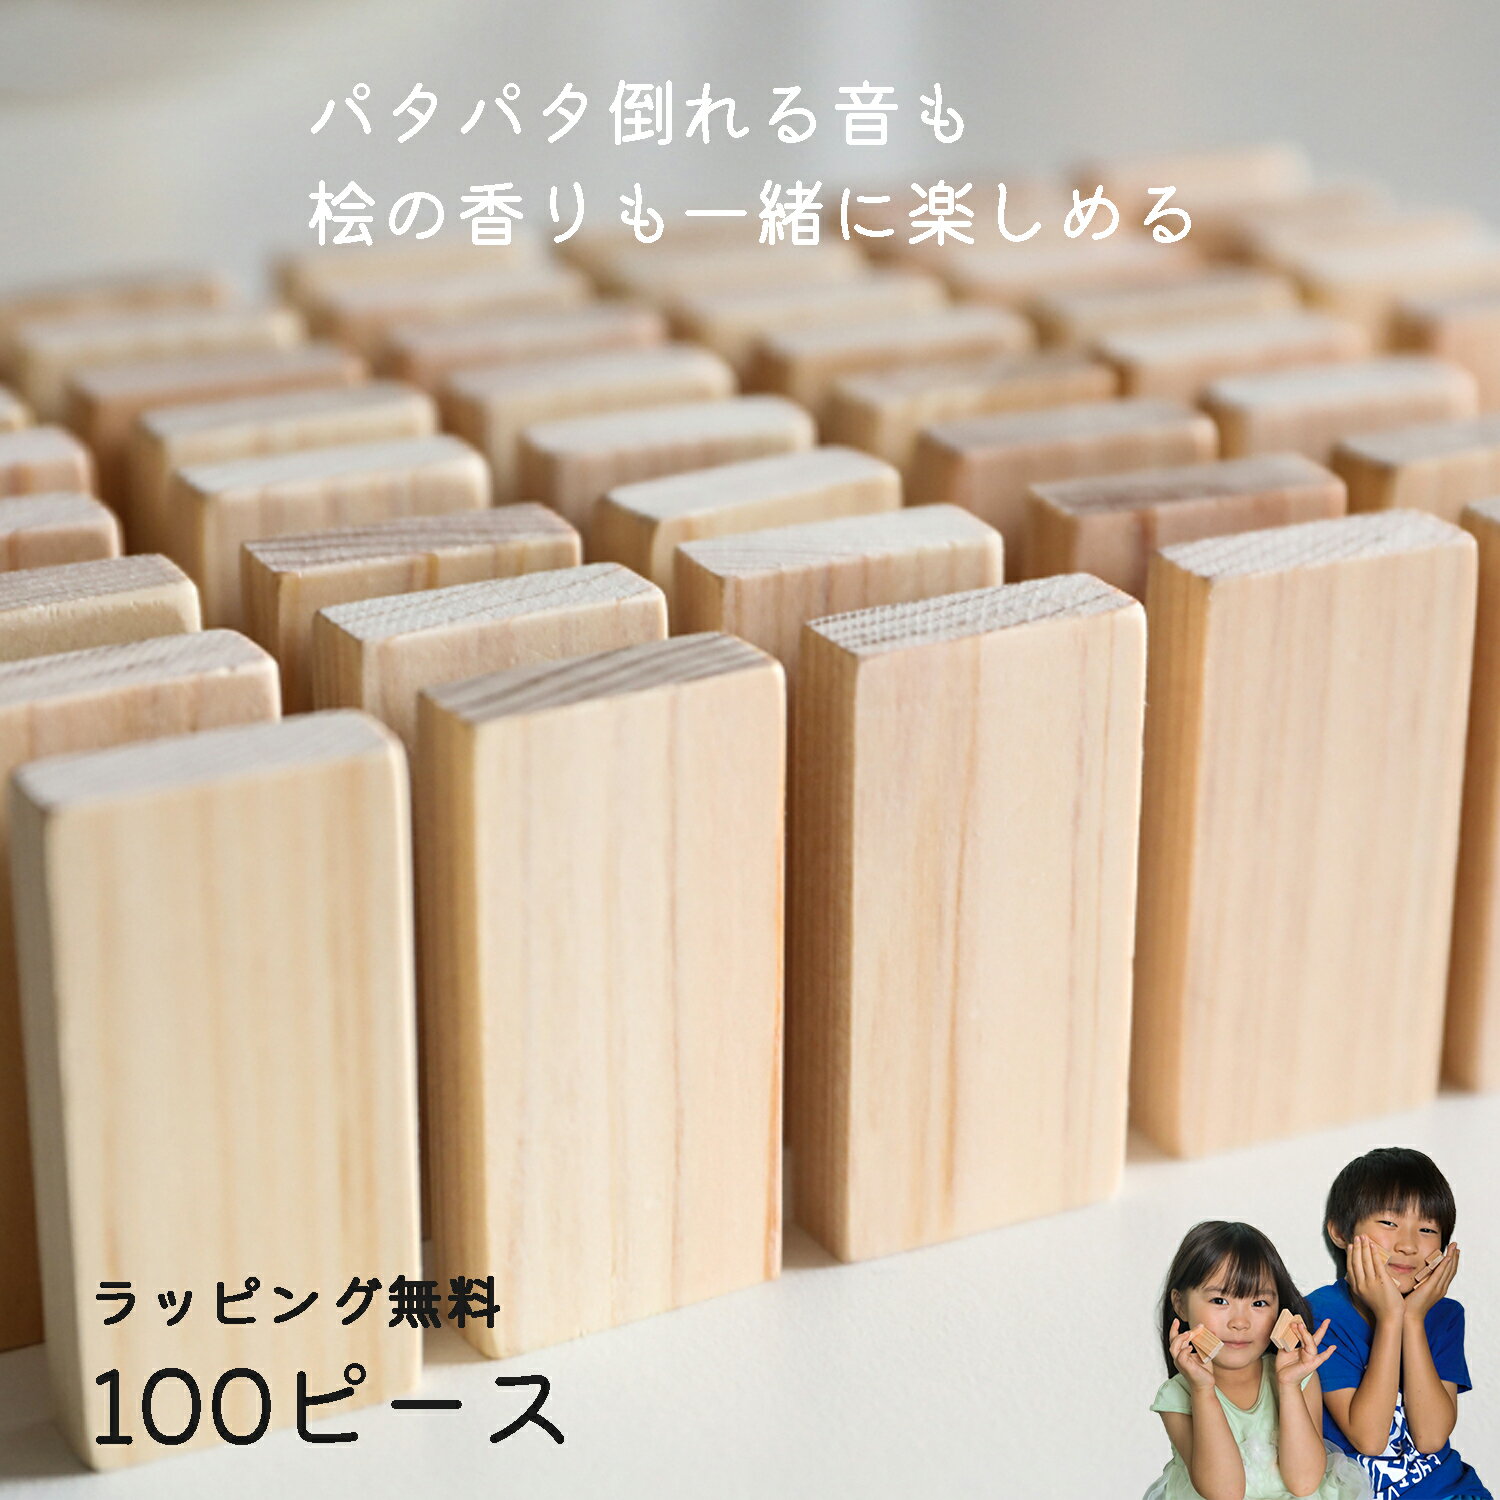 【ギフトラッピング無料】ドミノ倒し 100ピース 日本製 ひのき おもちゃ ドミノ 木のおもちゃ 積み木 知育玩具 木製 …